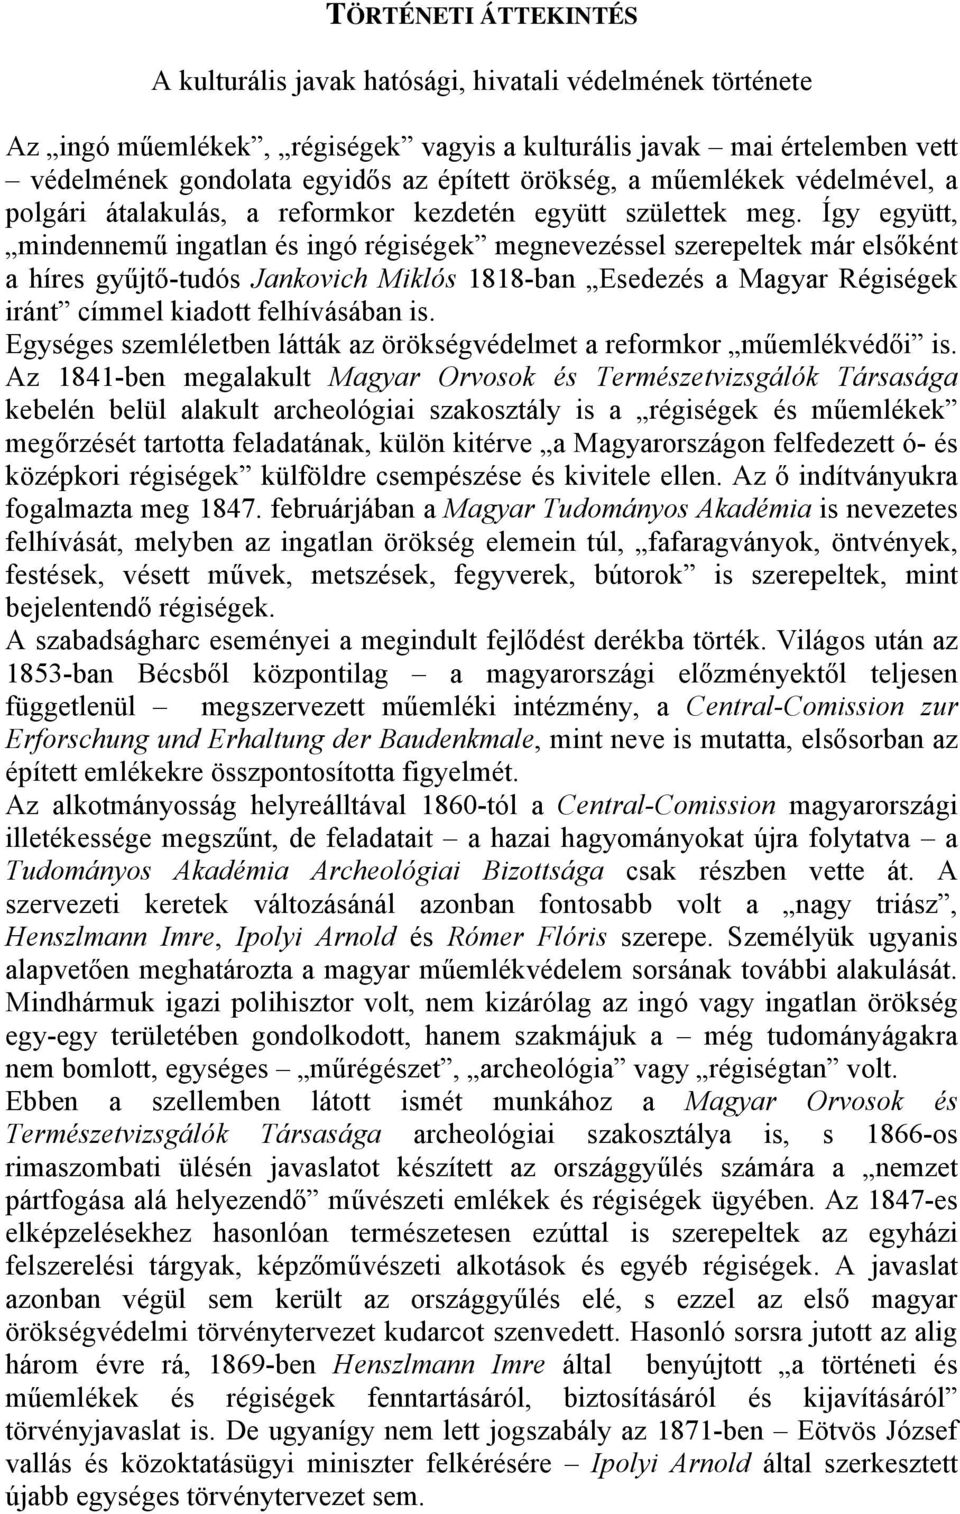 Így együtt, mindennemű ingatlan és ingó régiségek megnevezéssel szerepeltek már elsőként a híres gyűjtő-tudós Jankovich Miklós 1818-ban Esedezés a Magyar Régiségek iránt címmel kiadott felhívásában